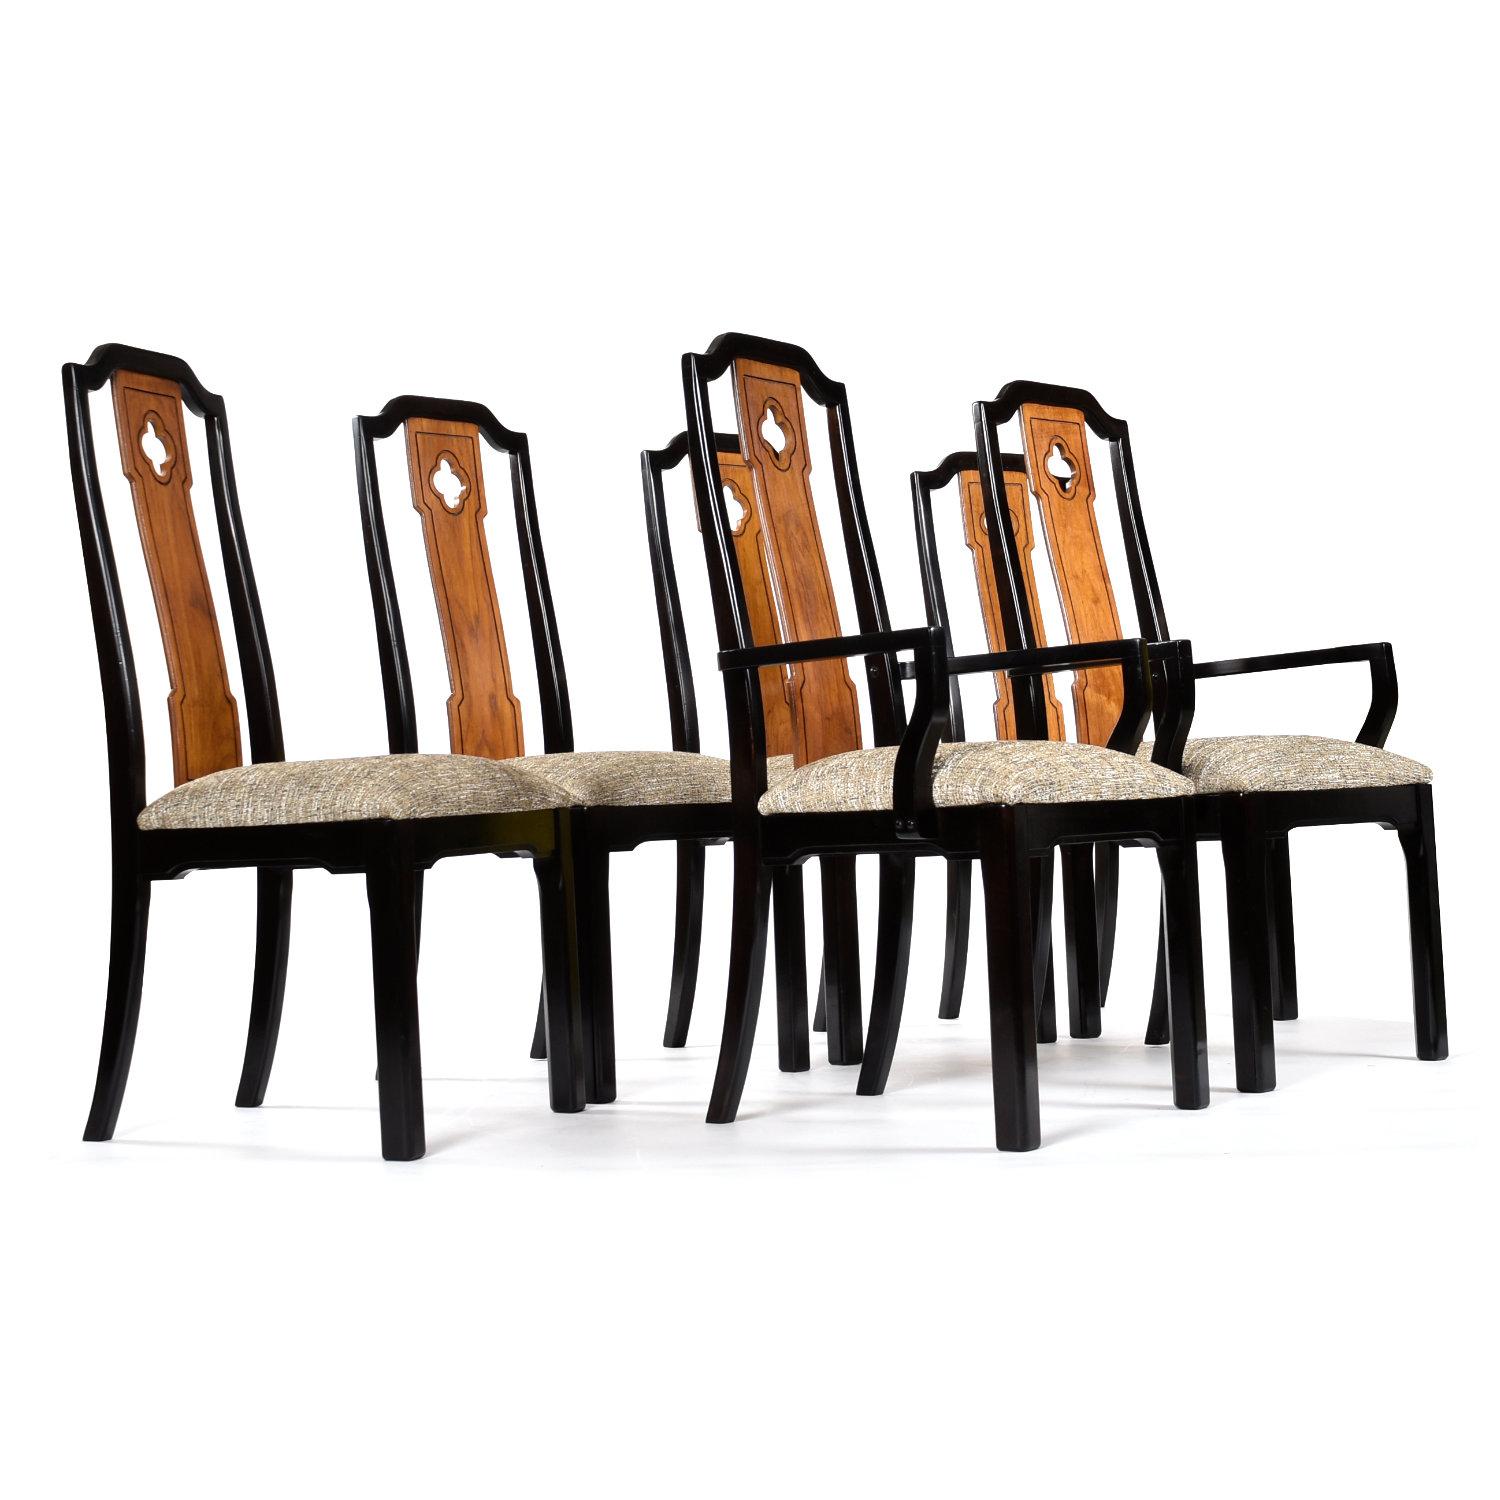 Ensemble de six chaises de salle à manger Thomasville Embassy, datant des années dix-neuf et soixante-dix, restaurées avec amour. Les chaises de salle à manger Chinoiserie ont une silhouette d'inspiration asiatique. La couronne dentelée en forme de